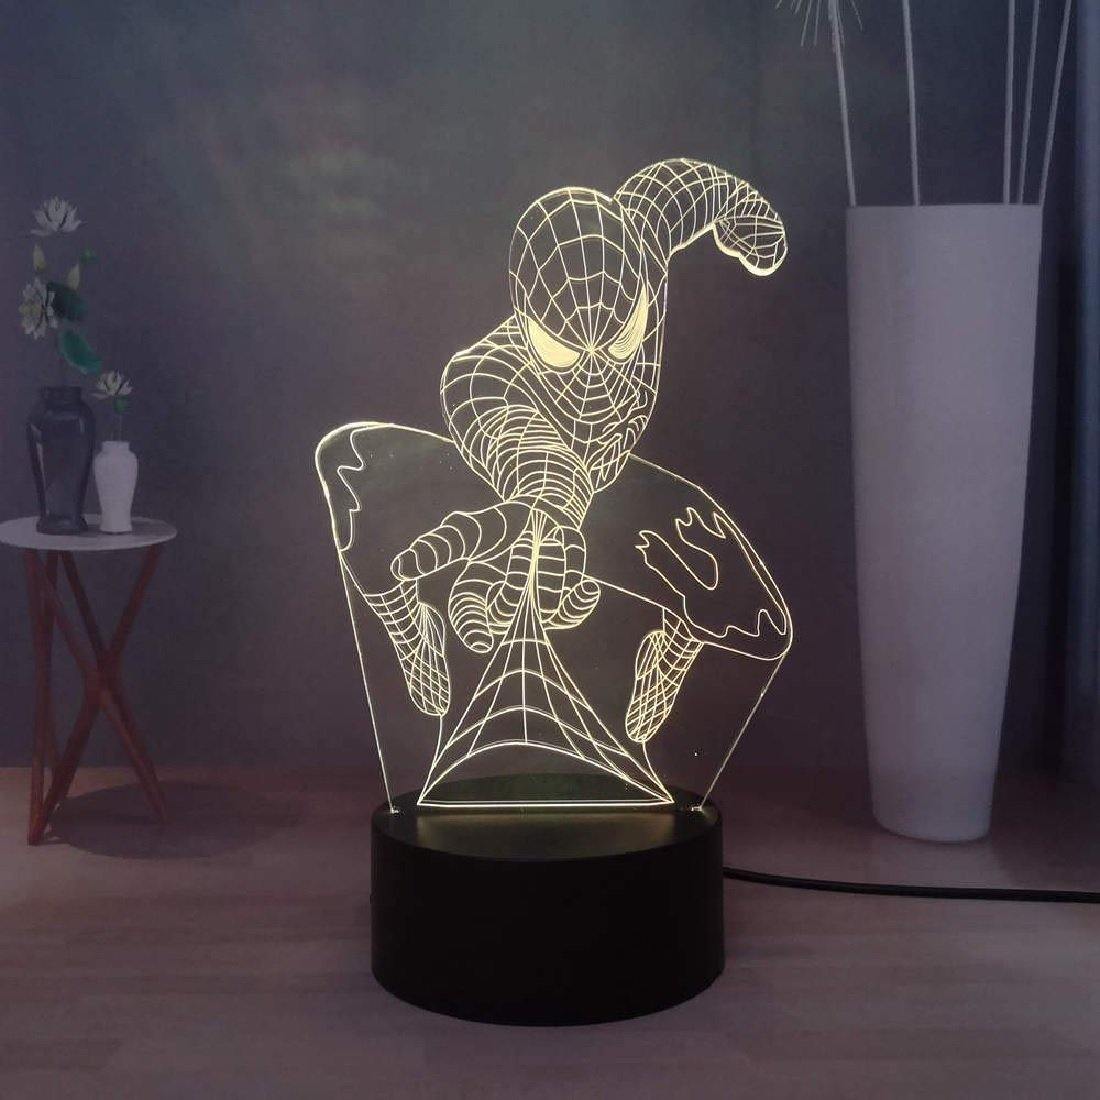 3D Illusion LED Spiderman Lamp 3D Illusion Led lamp- #Royalkart#3d illusion lamp